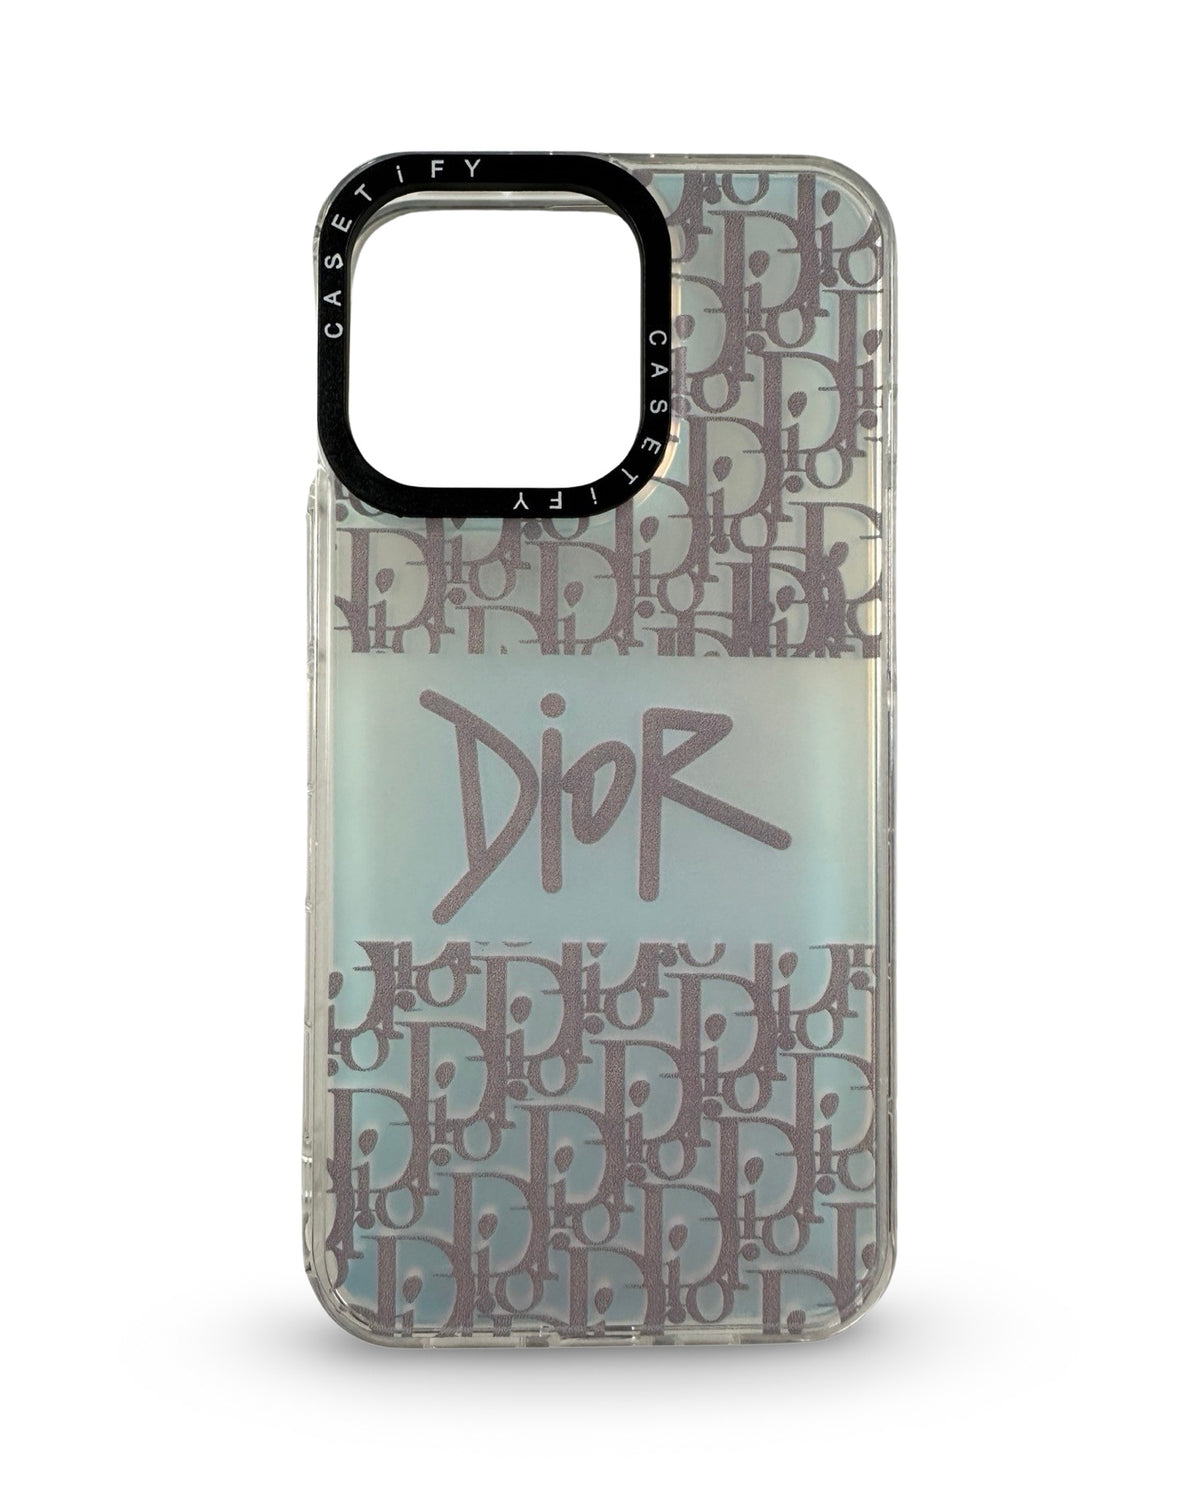 CaseNerd "Dio Grey Band" iPhone Case